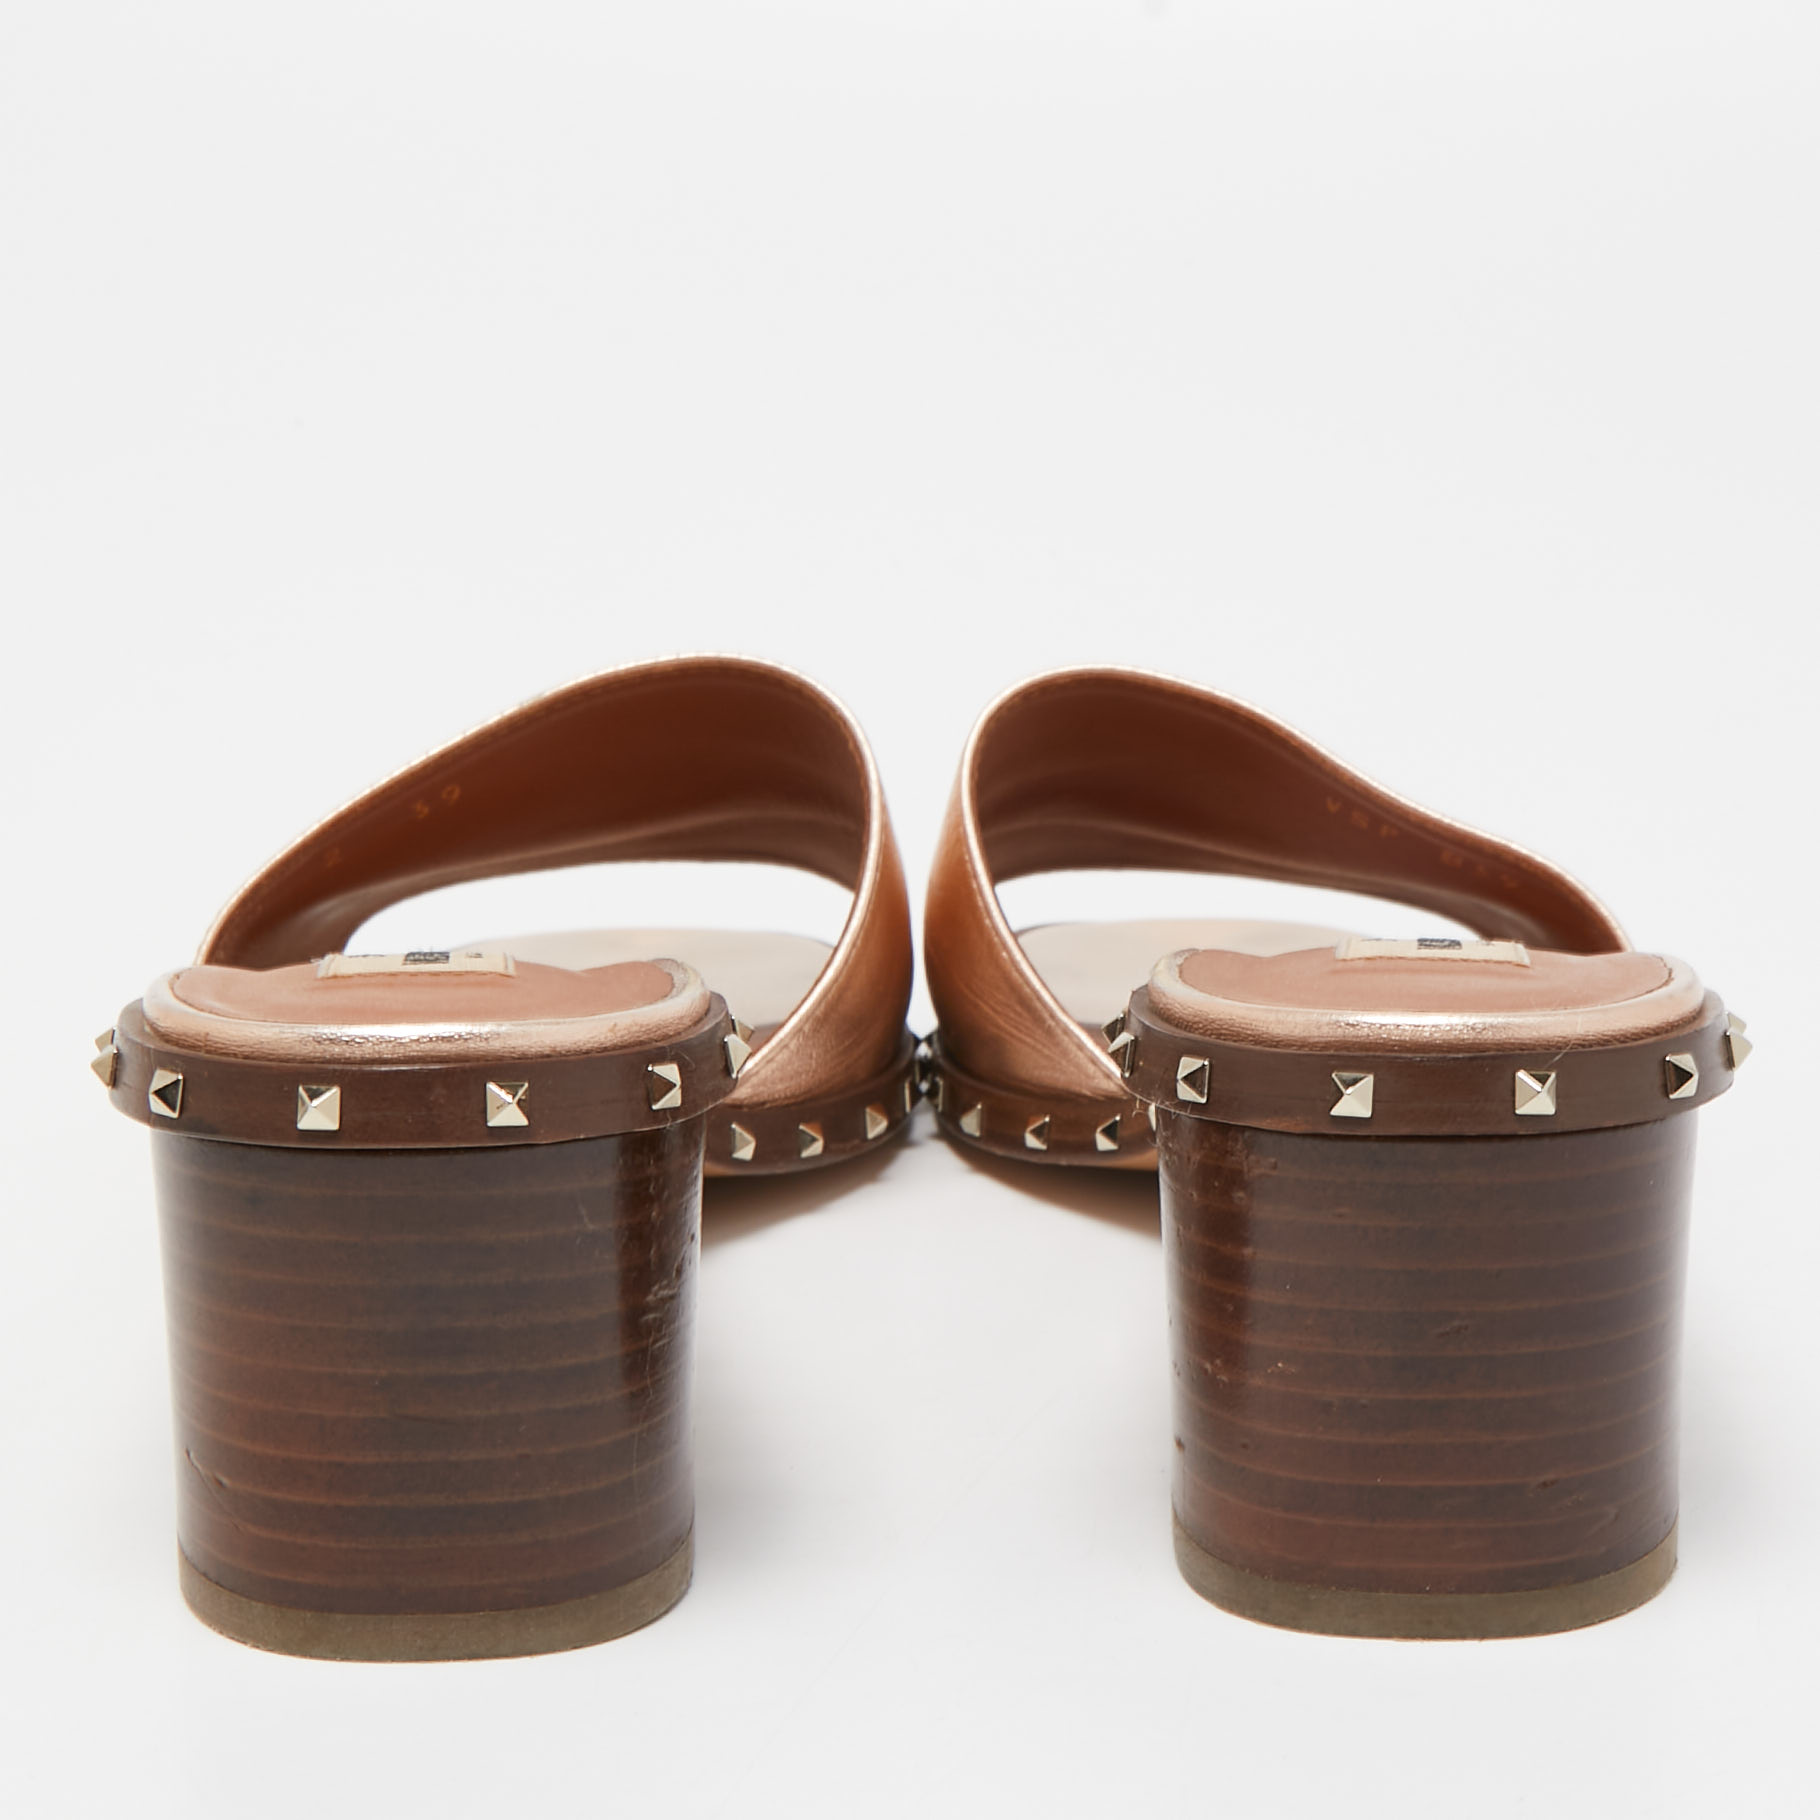 Valentino Rose Gold Leather Soul Rockstud Slide Sandals Size 39